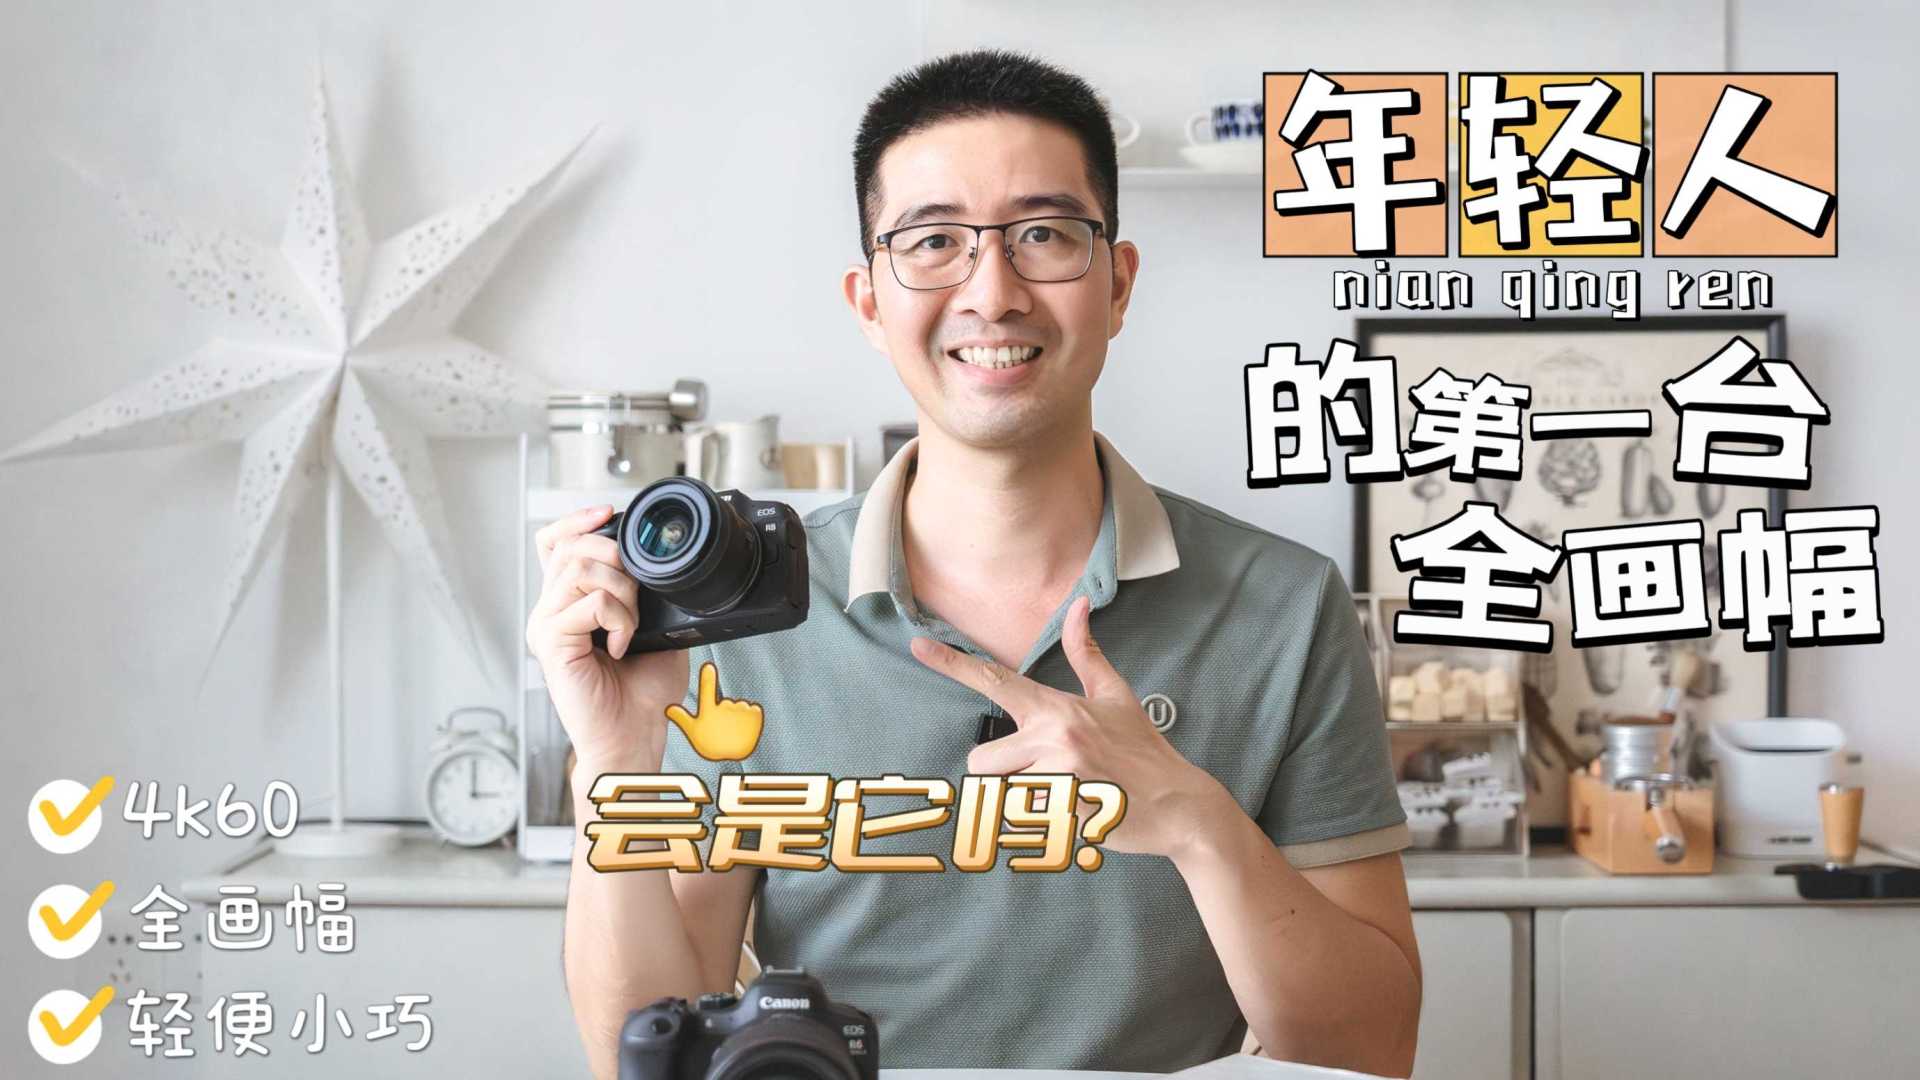 相机推荐丨据说是万元级必选全画幅微单相机如果你想购买一台相机